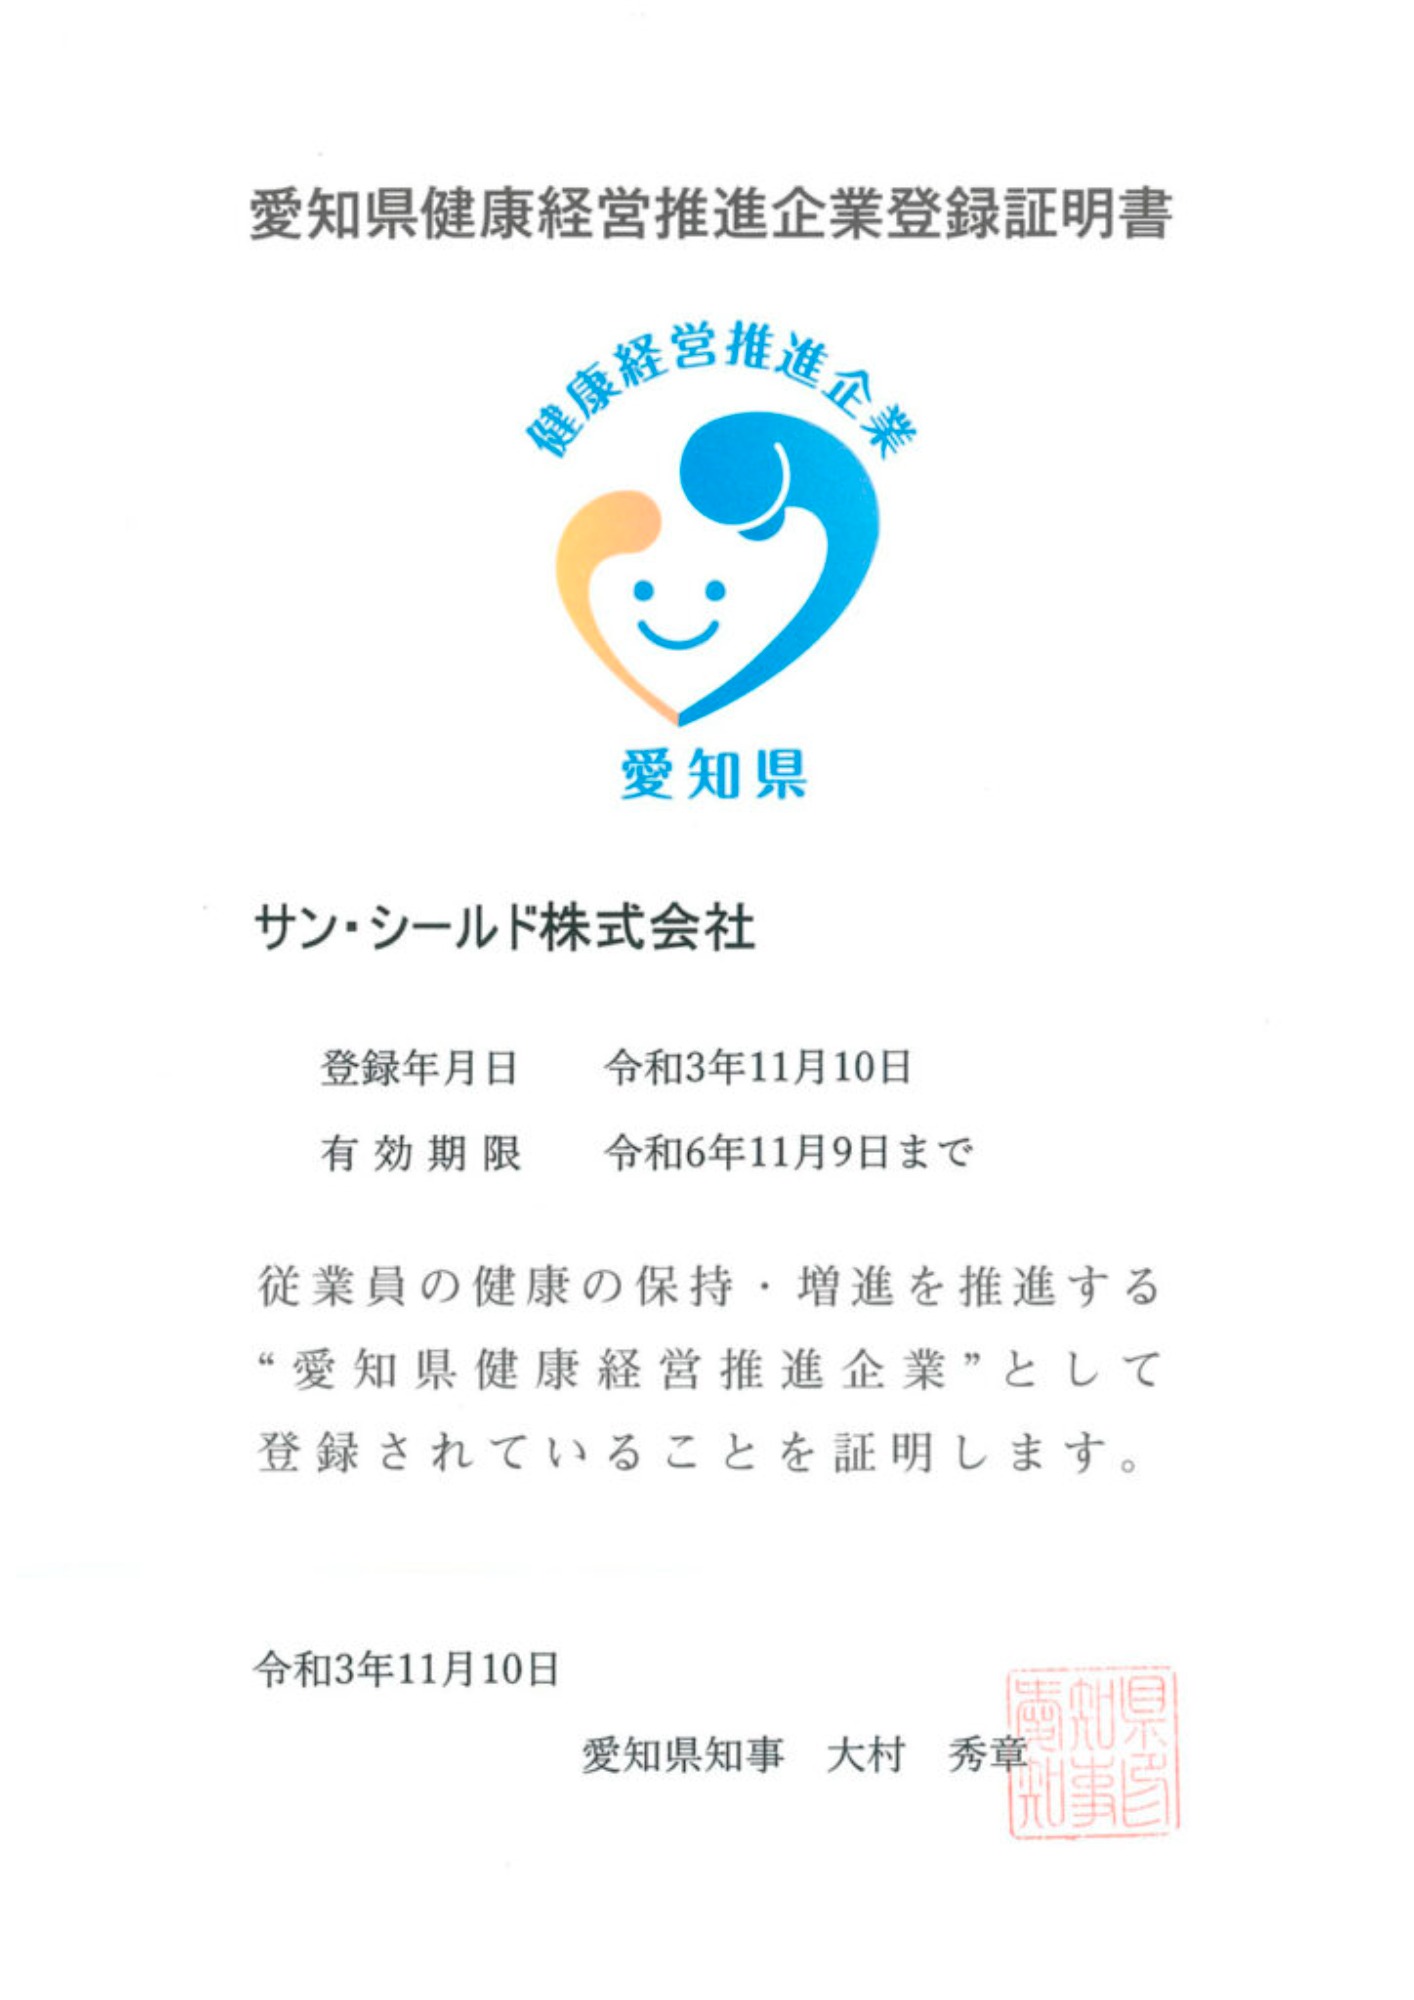 愛知県健康経営推進企業に登録されました